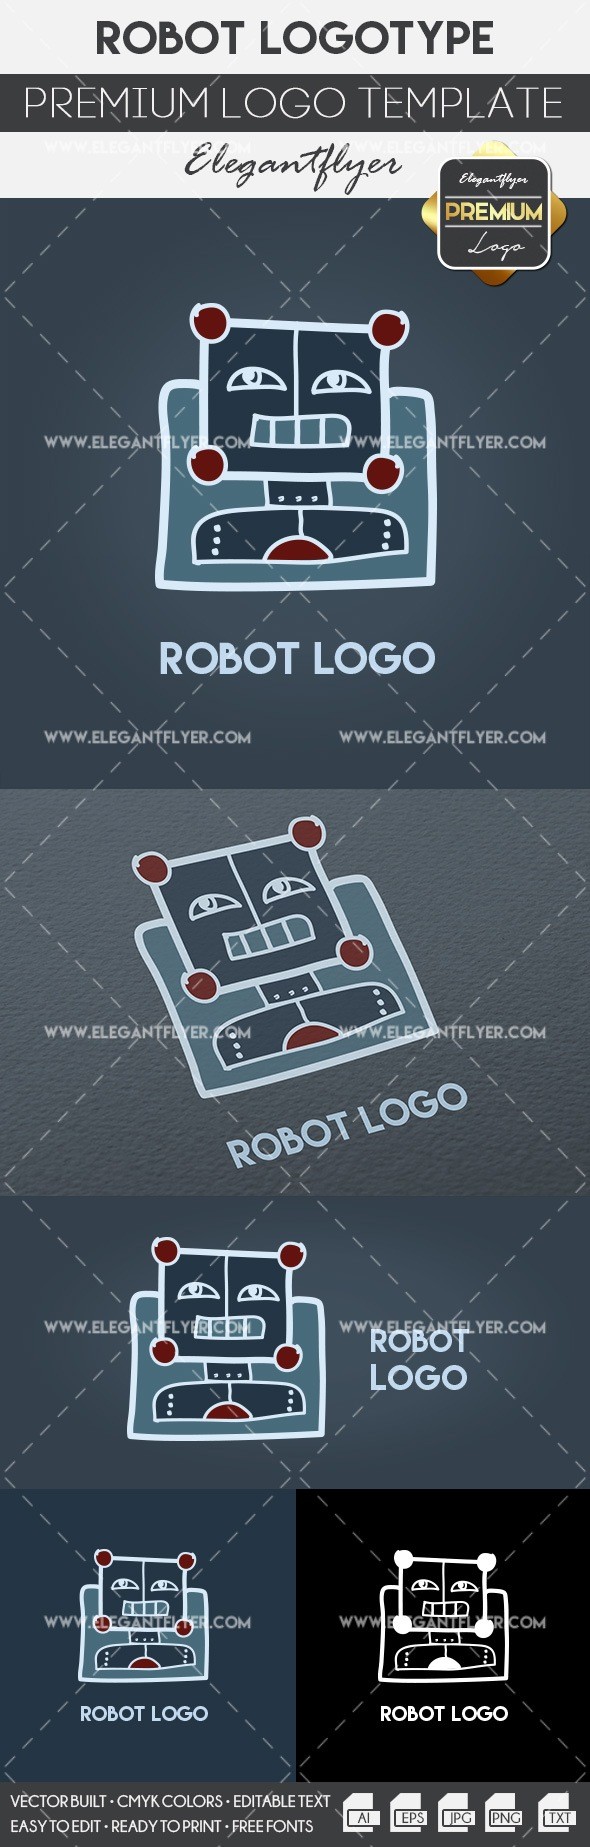 Robot logo by ElegantFlyer